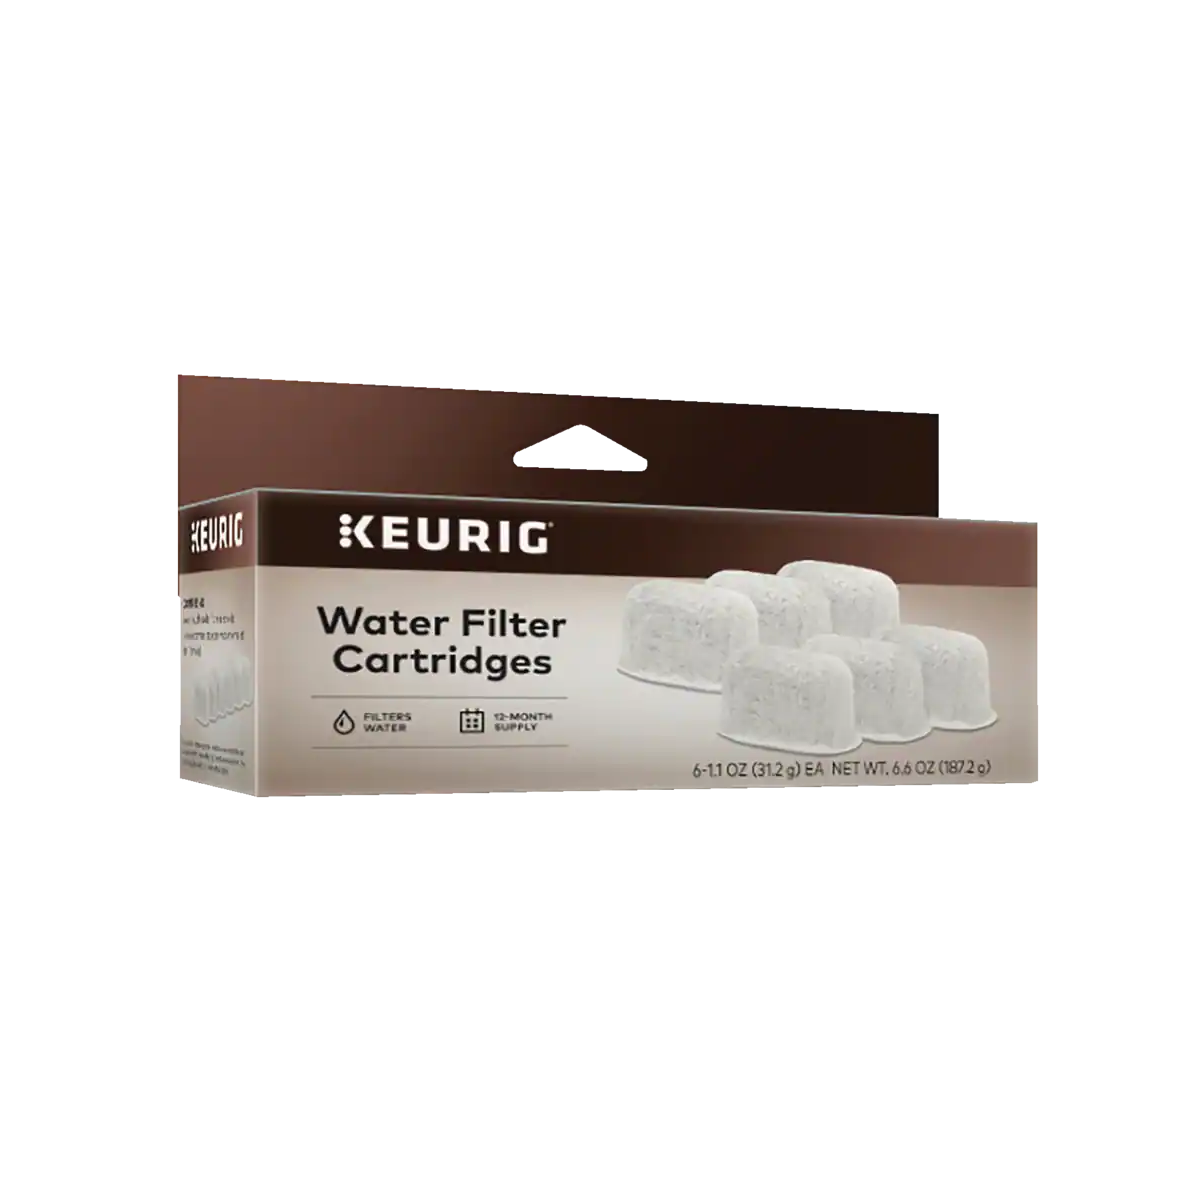 Keurig Water Filter Cartridges (6)